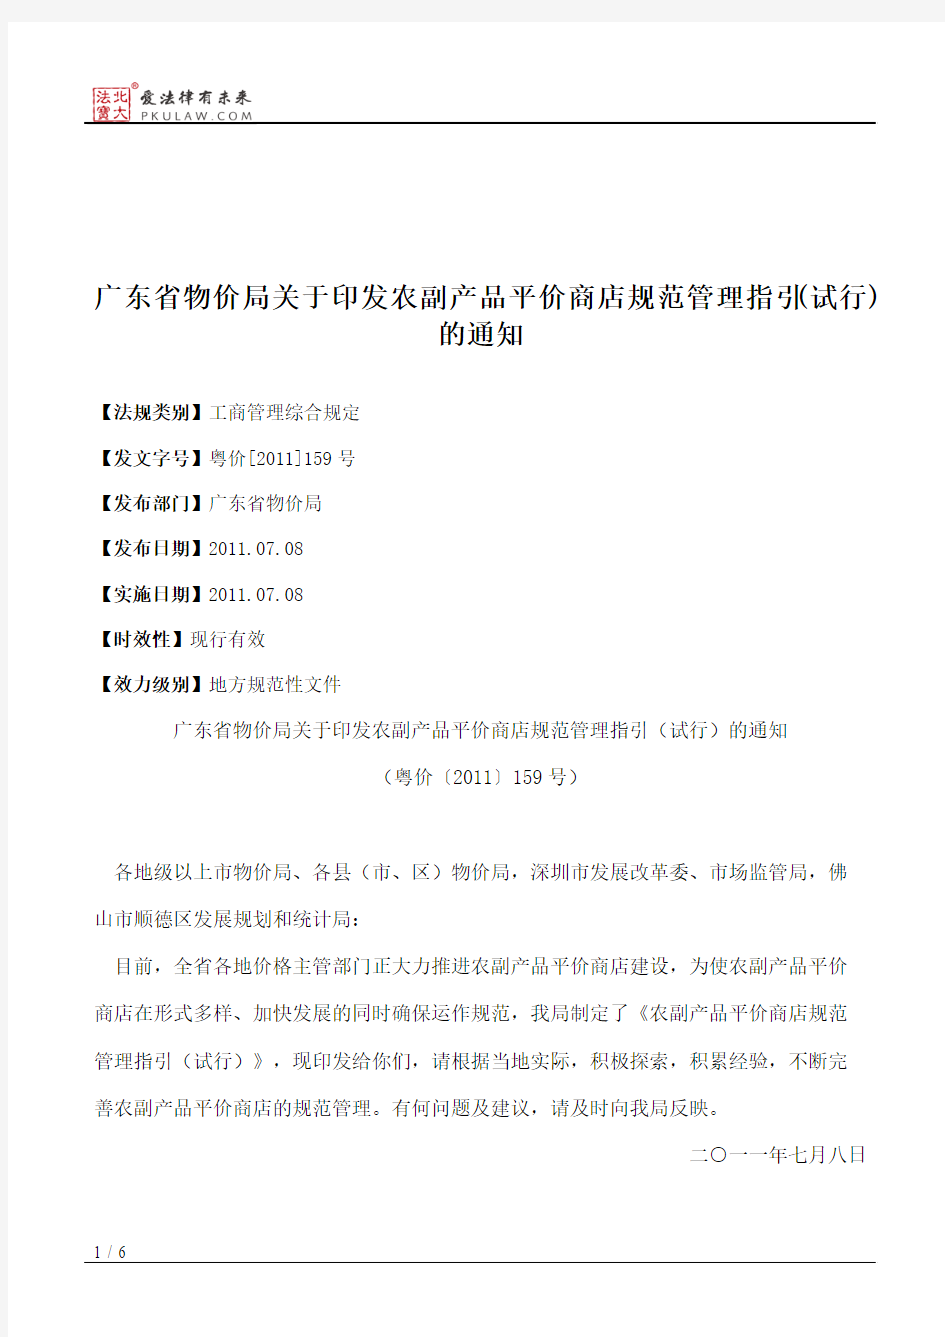 广东省物价局关于印发农副产品平价商店规范管理指引(试行)的通知